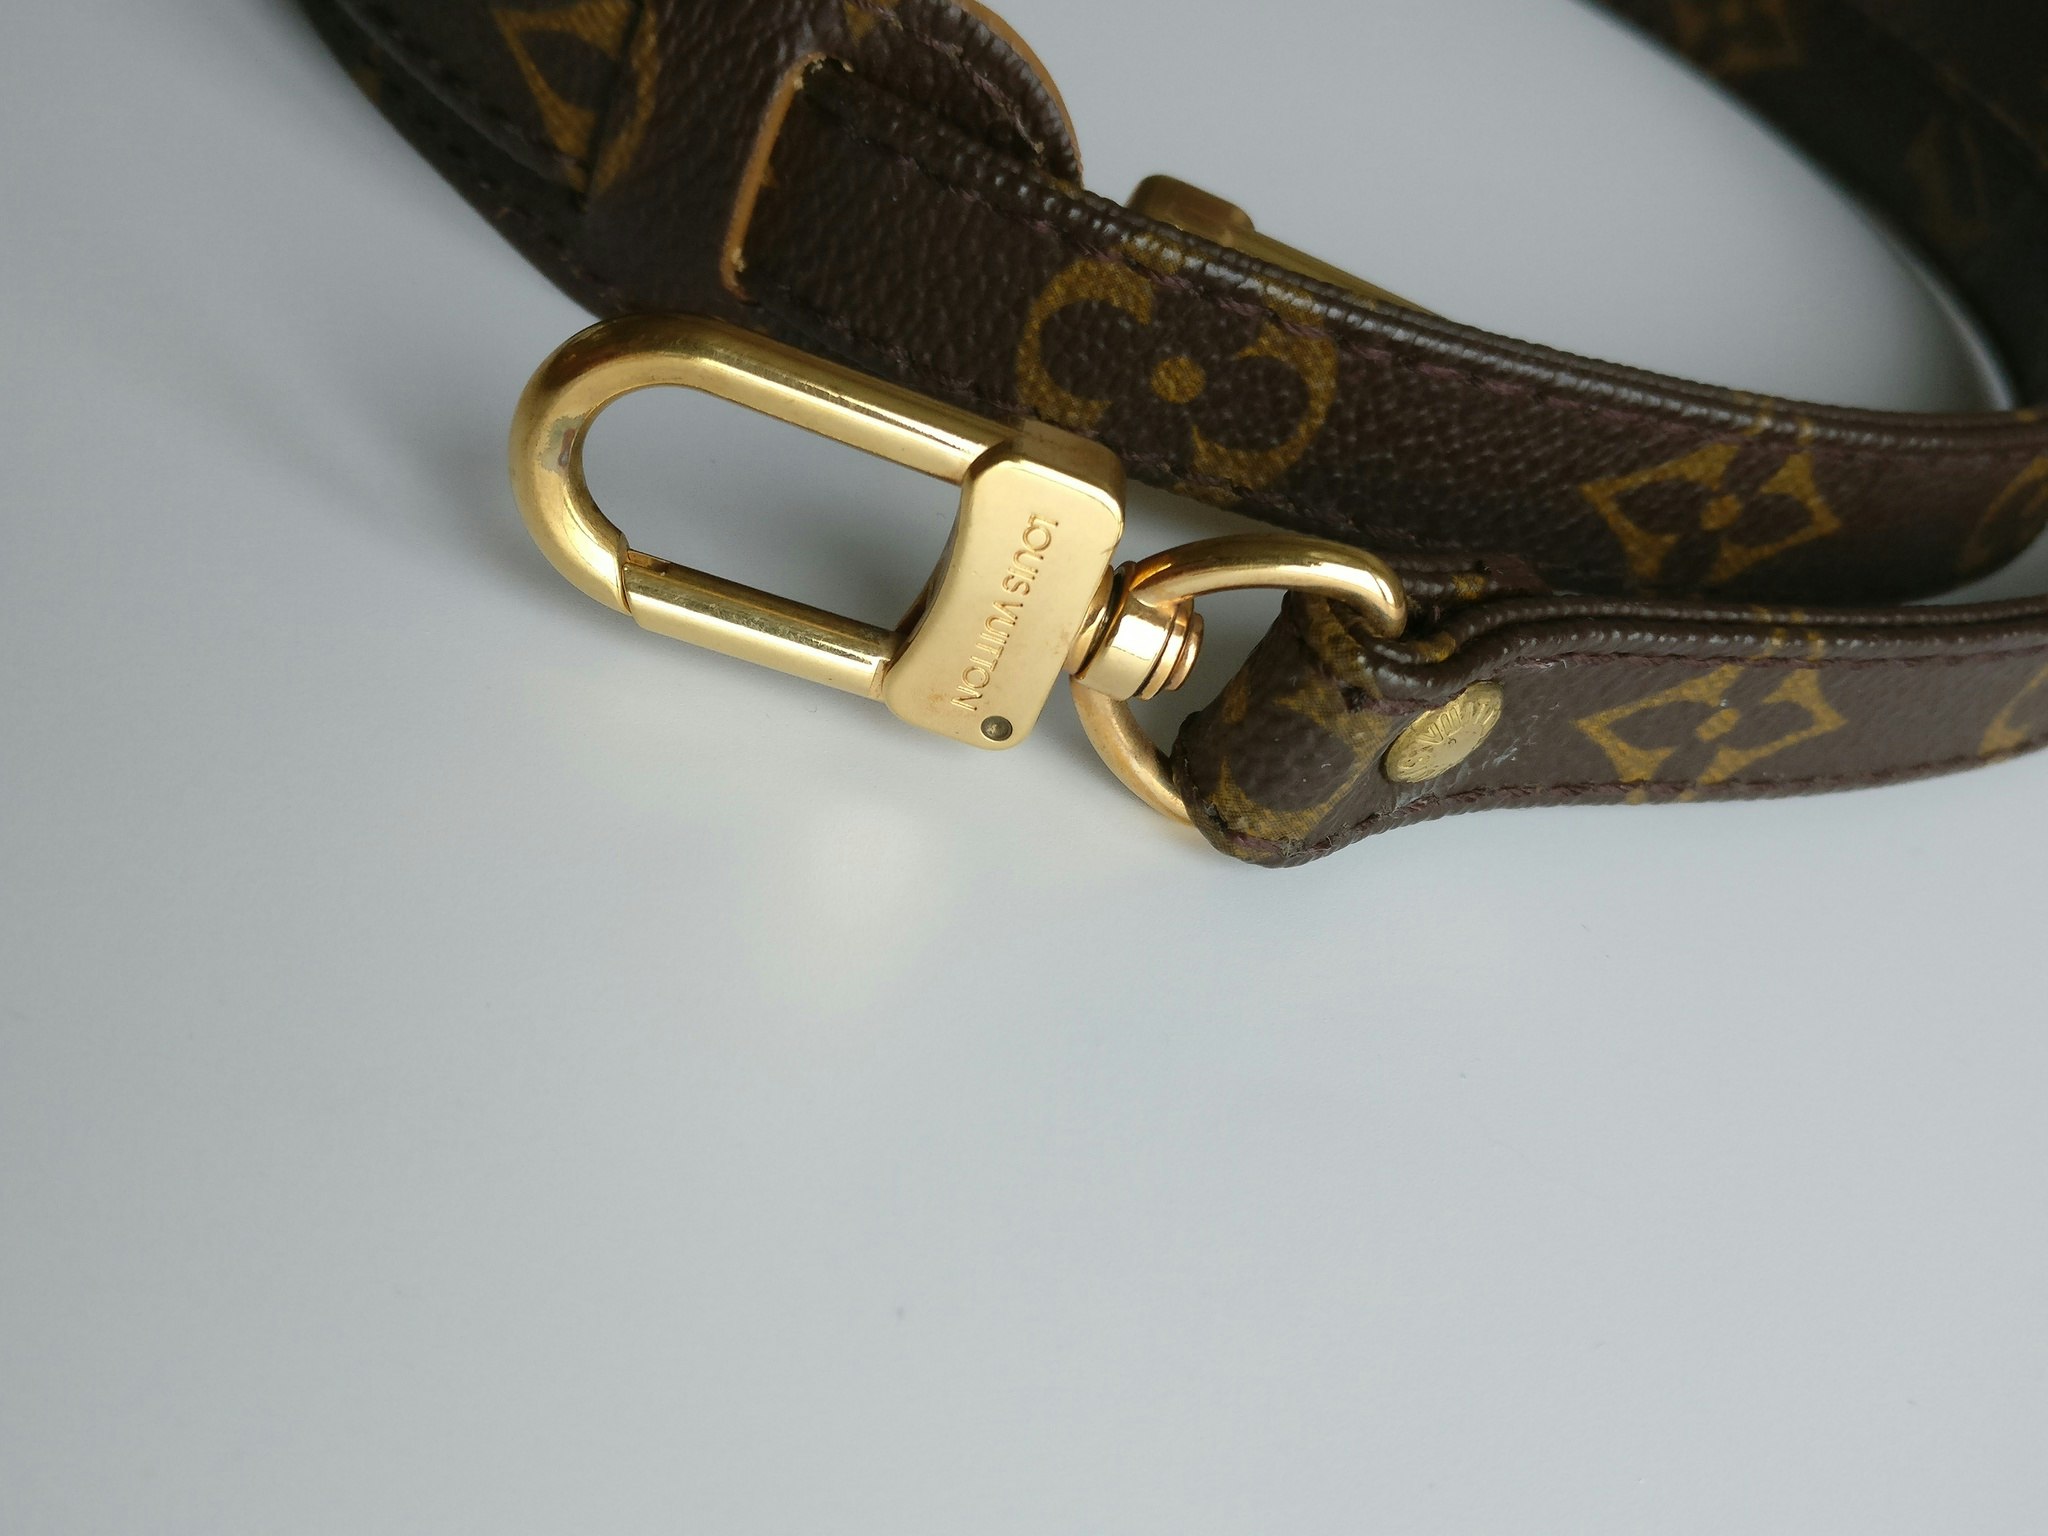 Louis Vuitton shoulder strap - Good or Bag